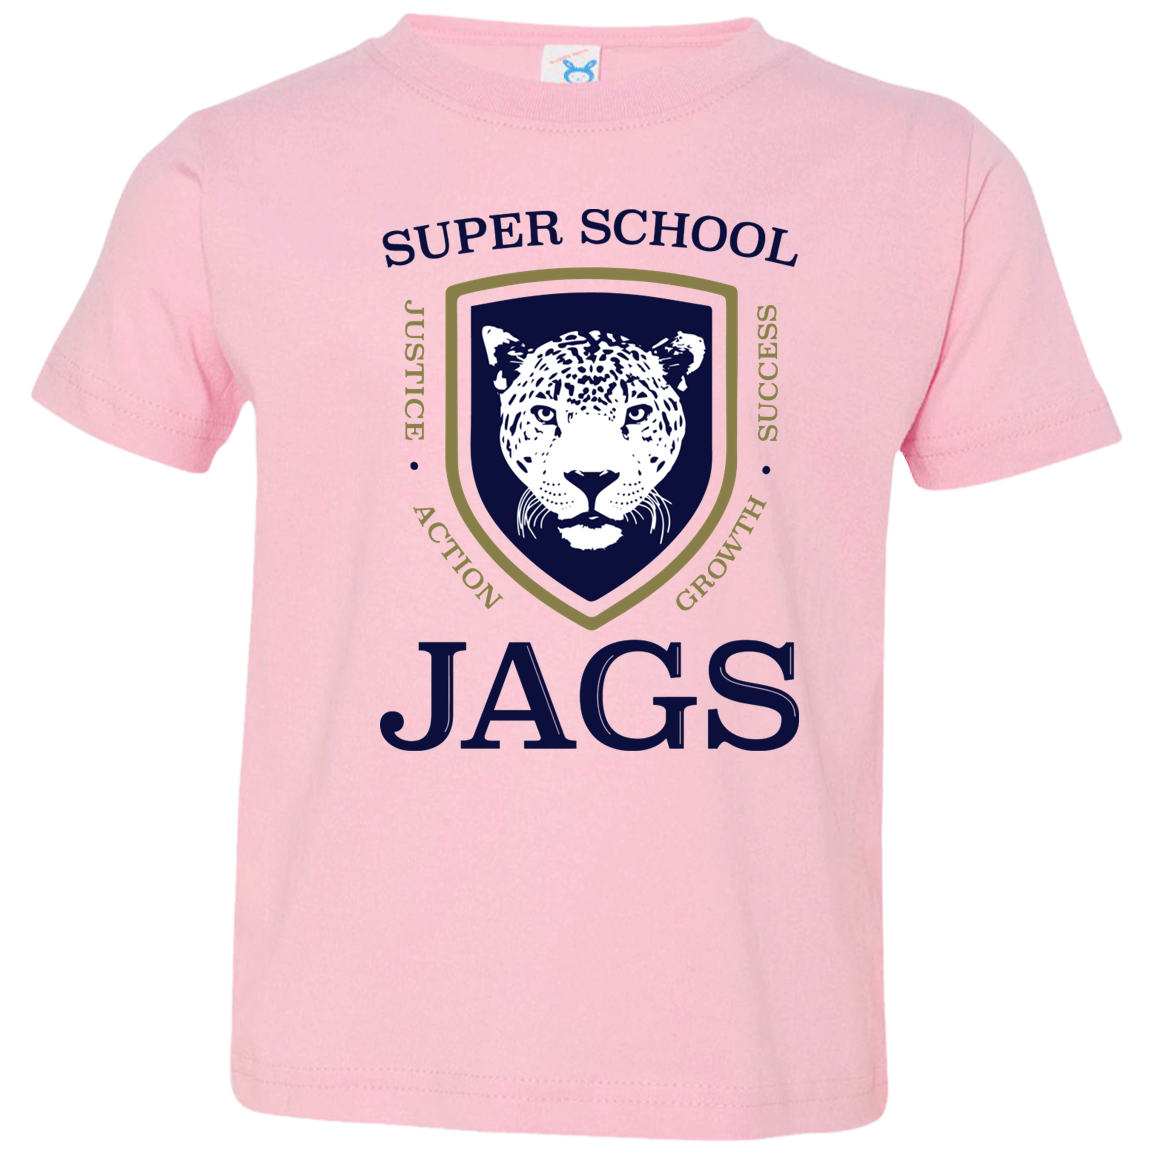 Toddler Soft T-Shirt - Super School